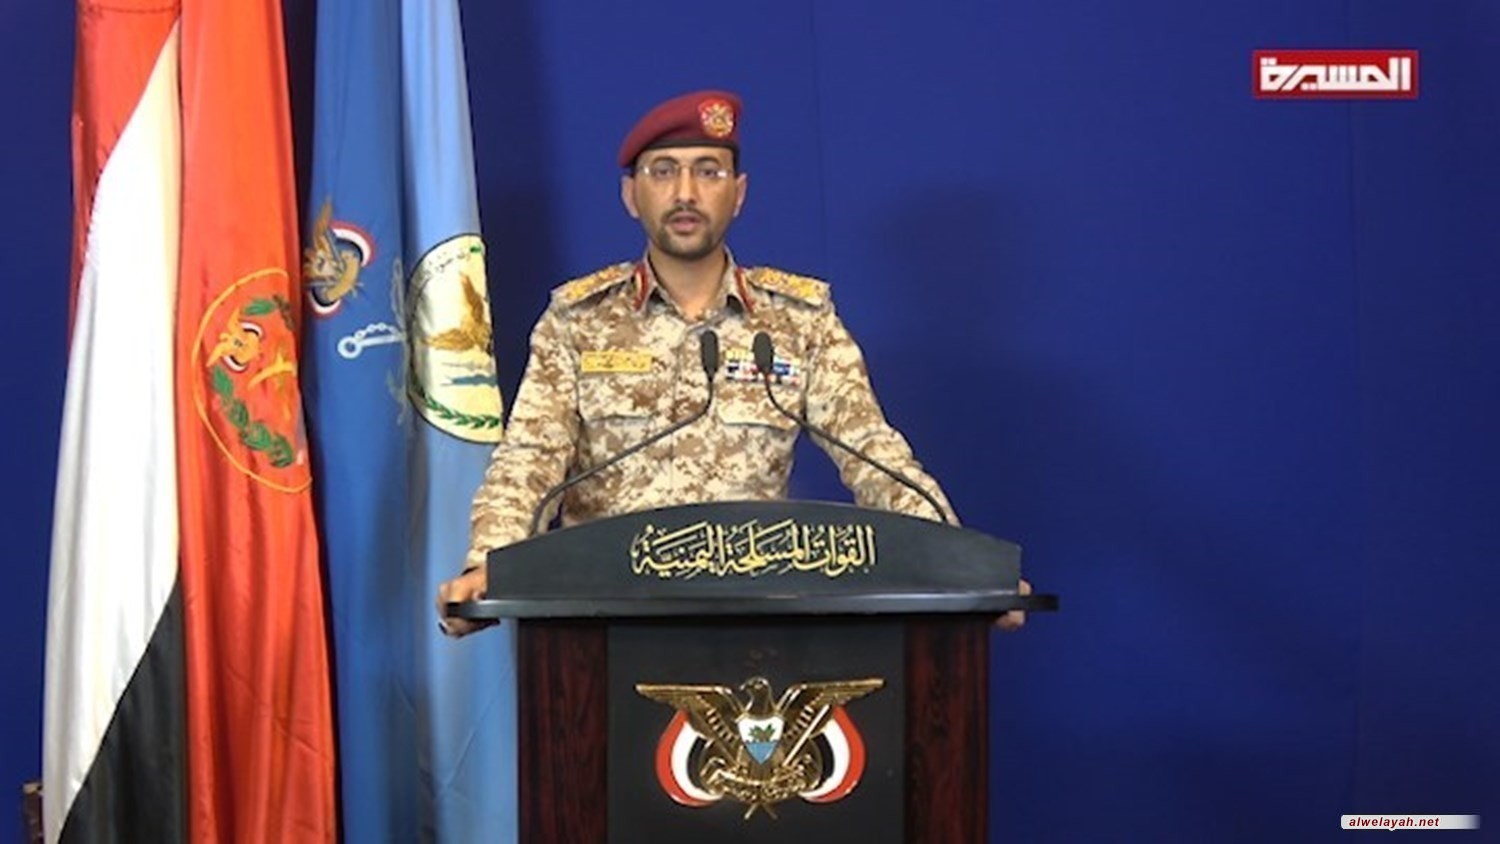 القوات المسلحة اليمنية تعلن استهداف سفينة شحن عسكرية امريكية